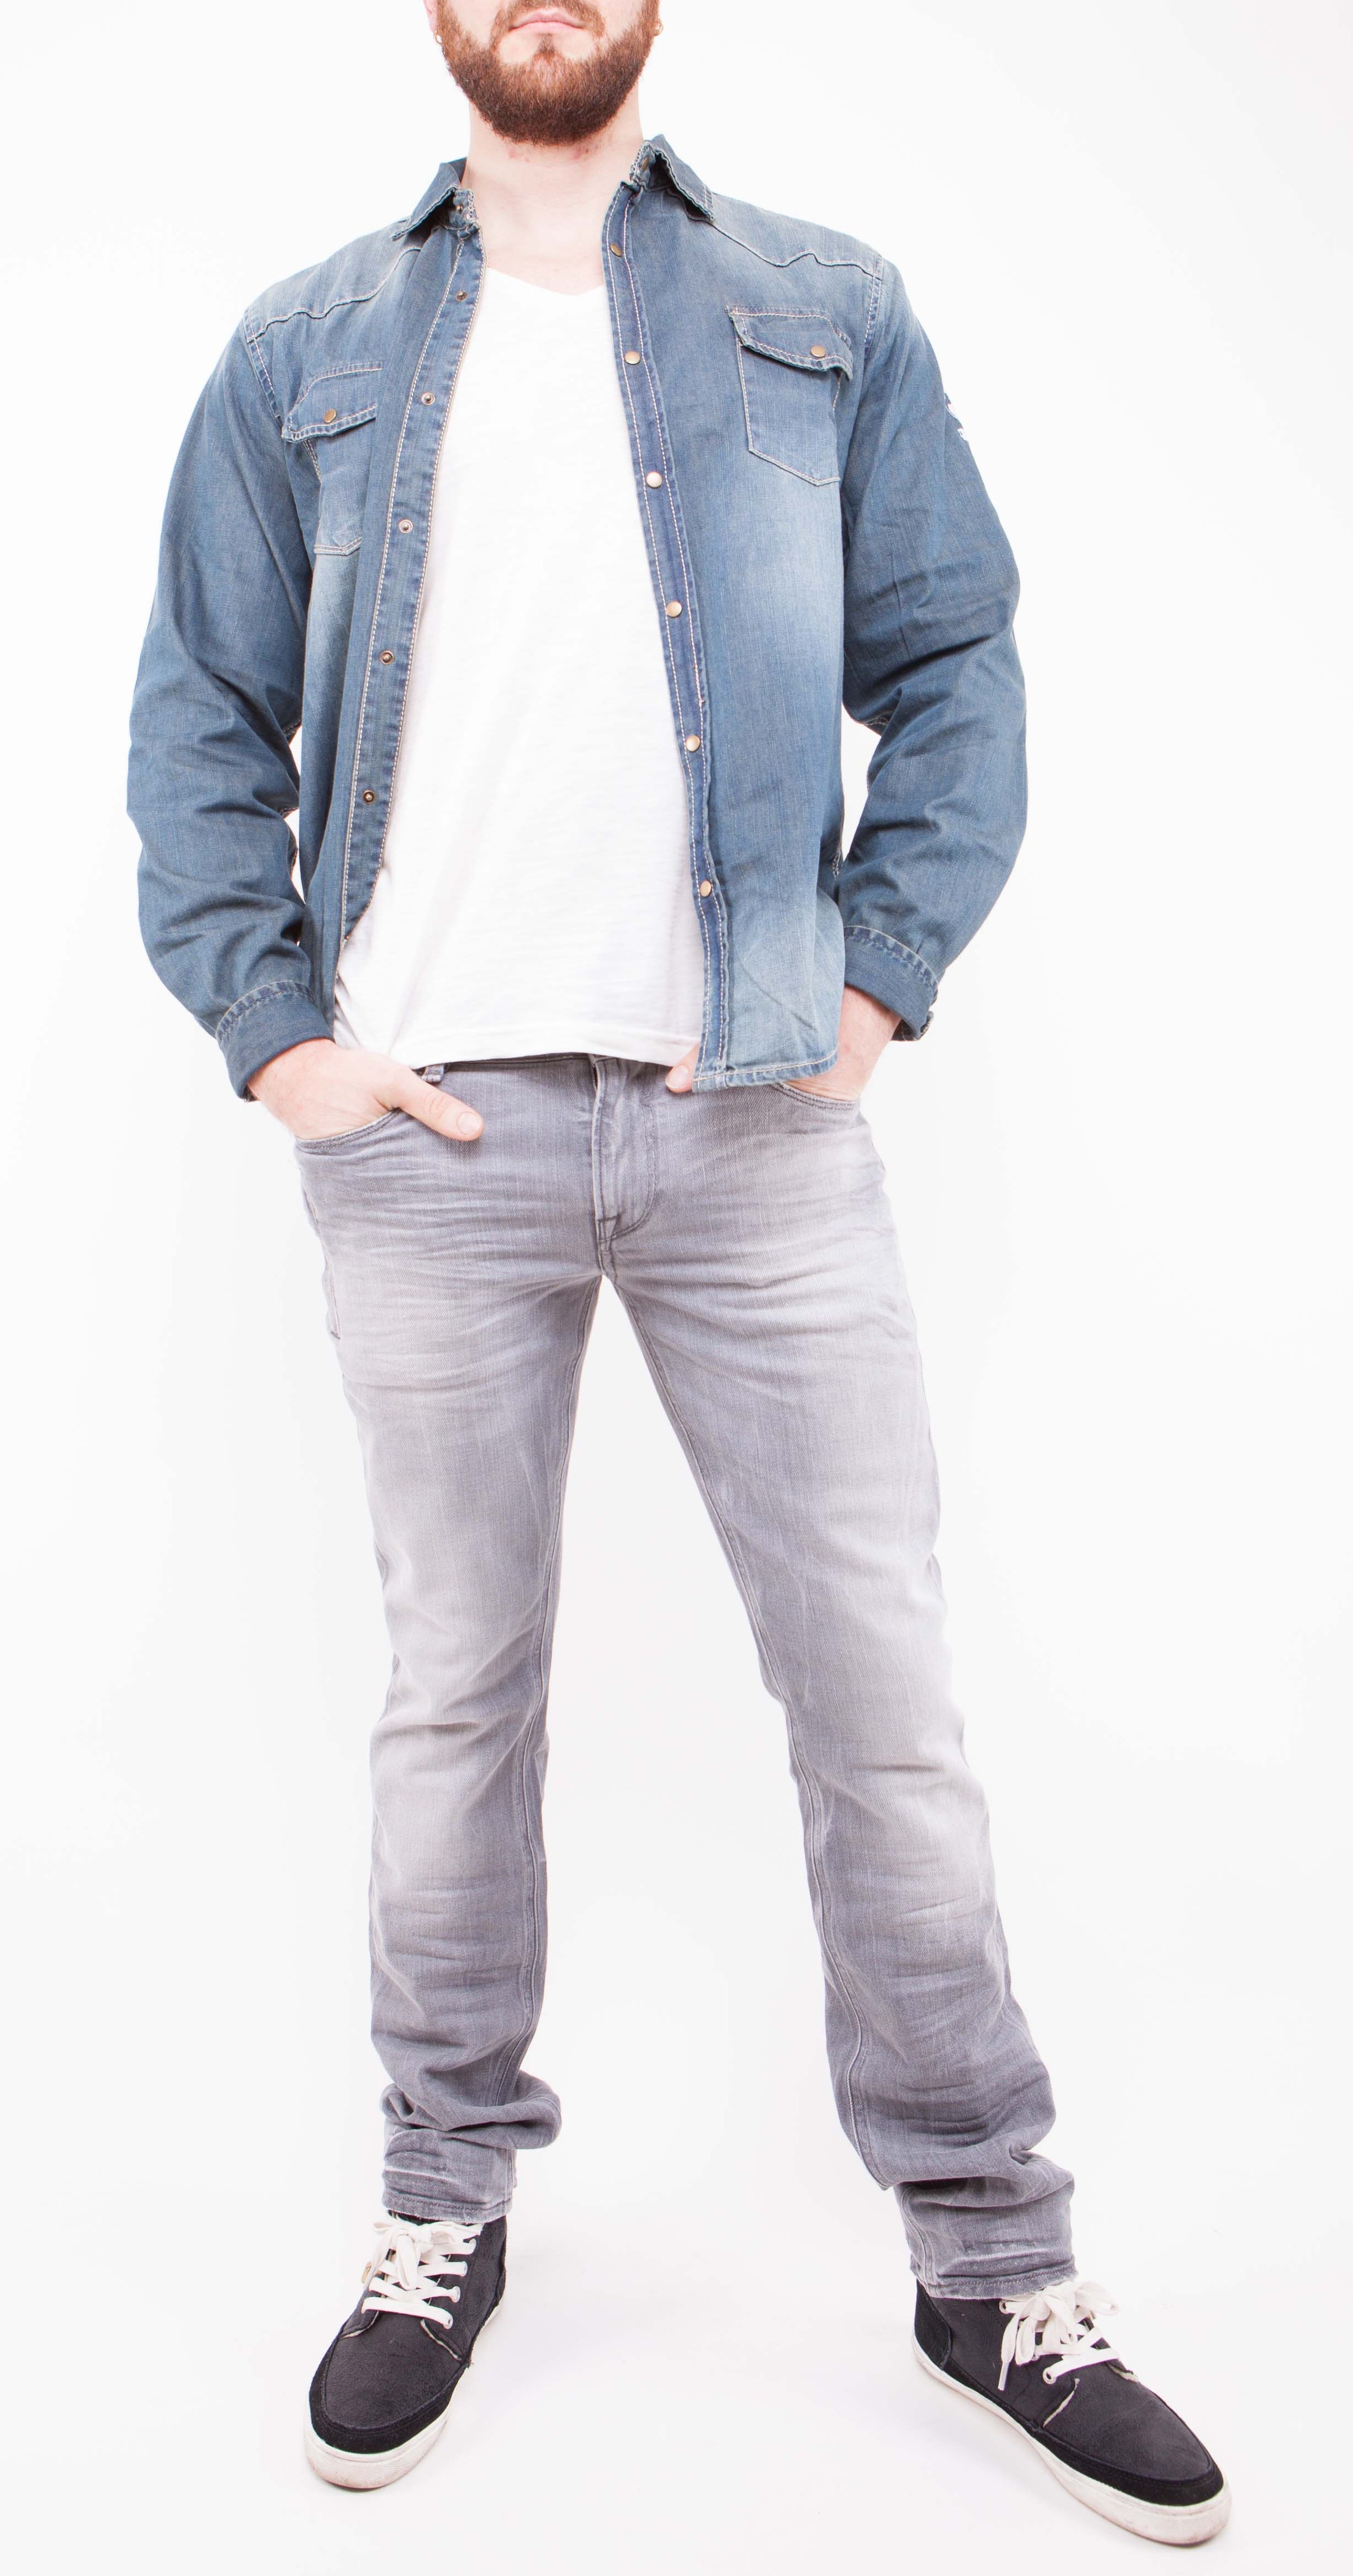 Chemise jeans - Homme - MK BNCE - Fashion - Qualit&eacute; - d&eacute;lav&eacute;